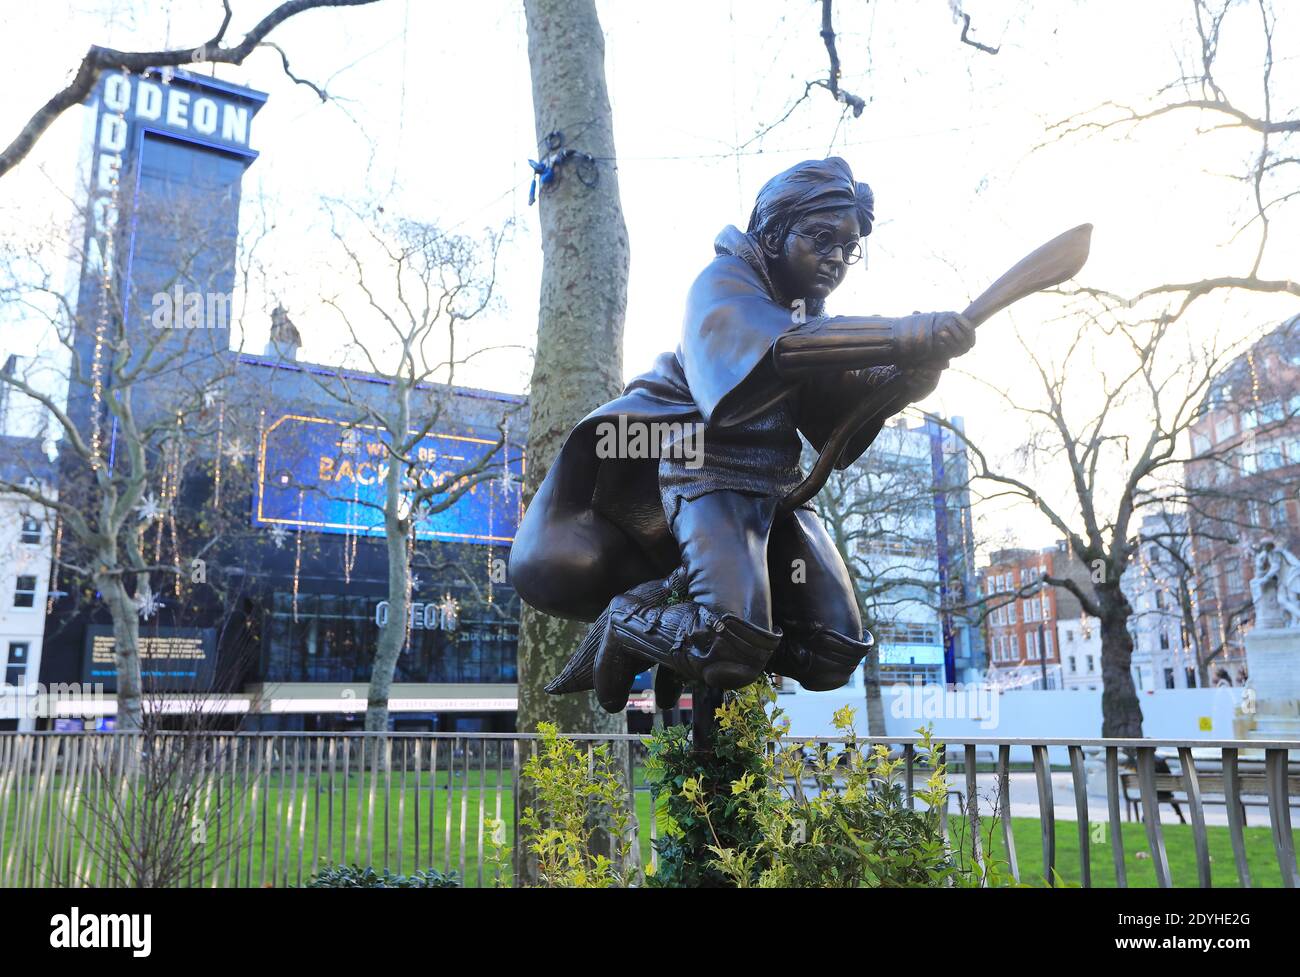 Le dernier personnage de film statue à thème à Leicester Square - Harry Potter, montrant une scène de la pierre du philosophe, montrant le jeune assistant jouant Quidditch, à Londres, Royaume-Uni Banque D'Images